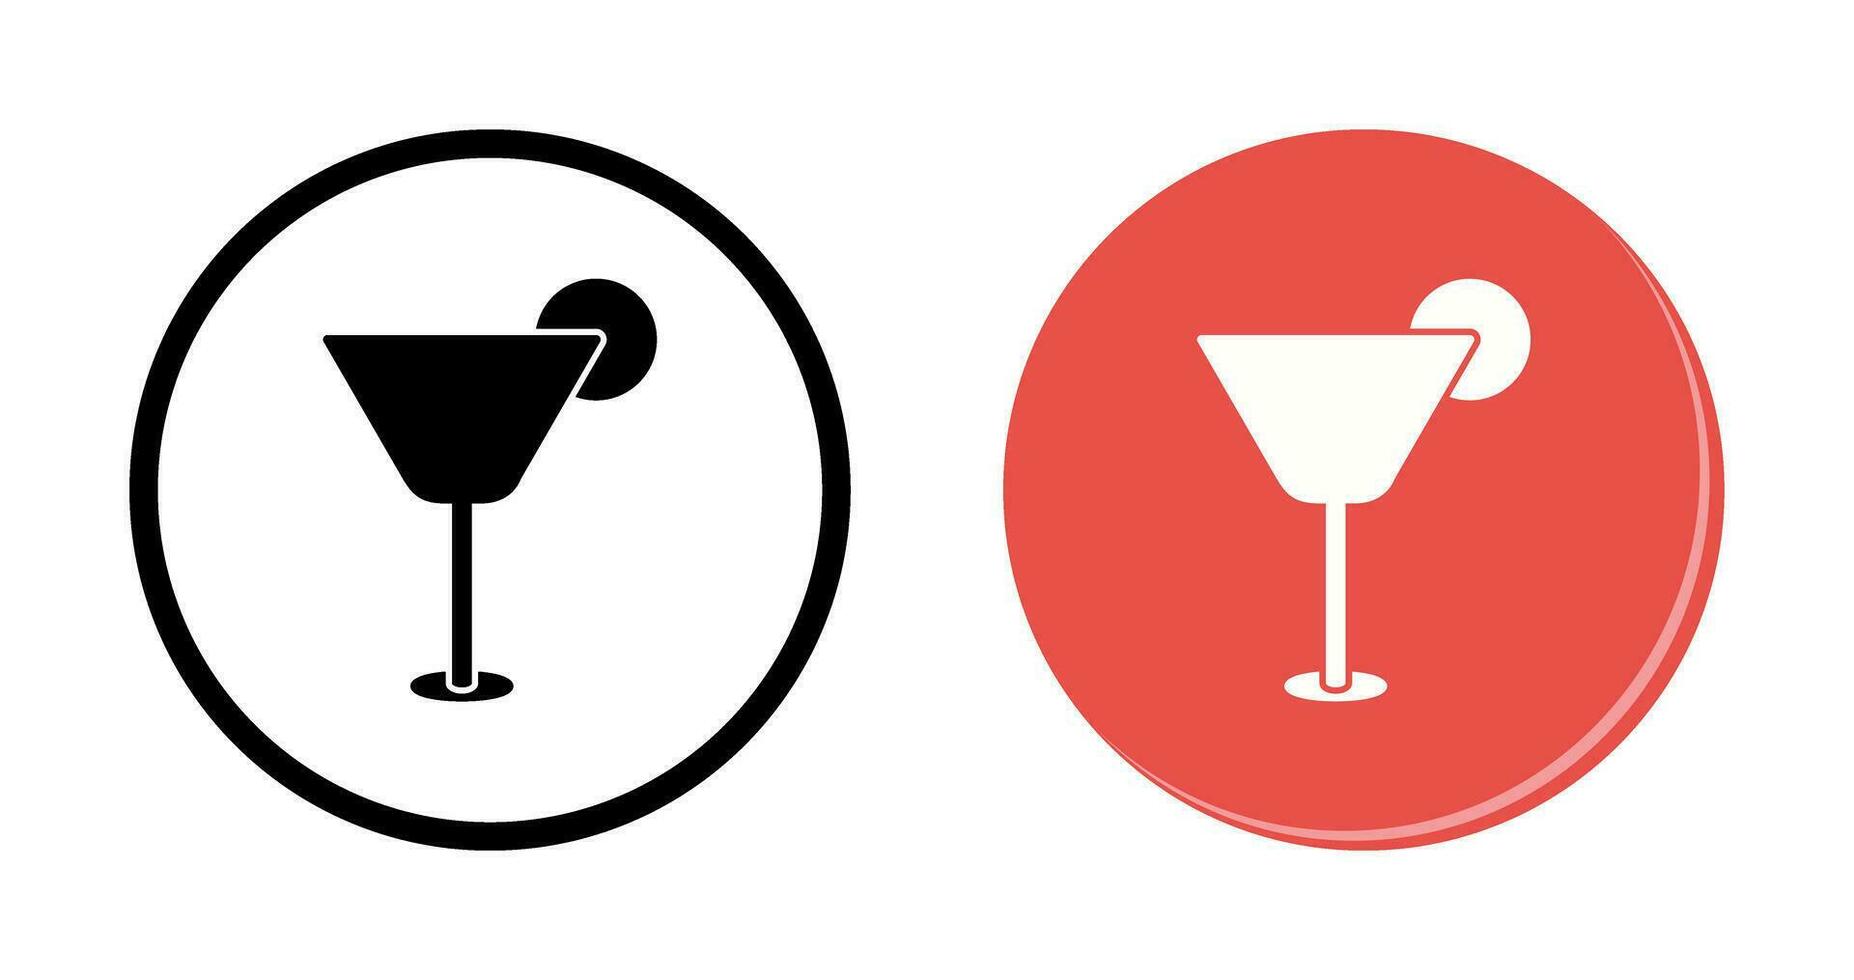 Vektorsymbol für Cocktailgetränke vektor